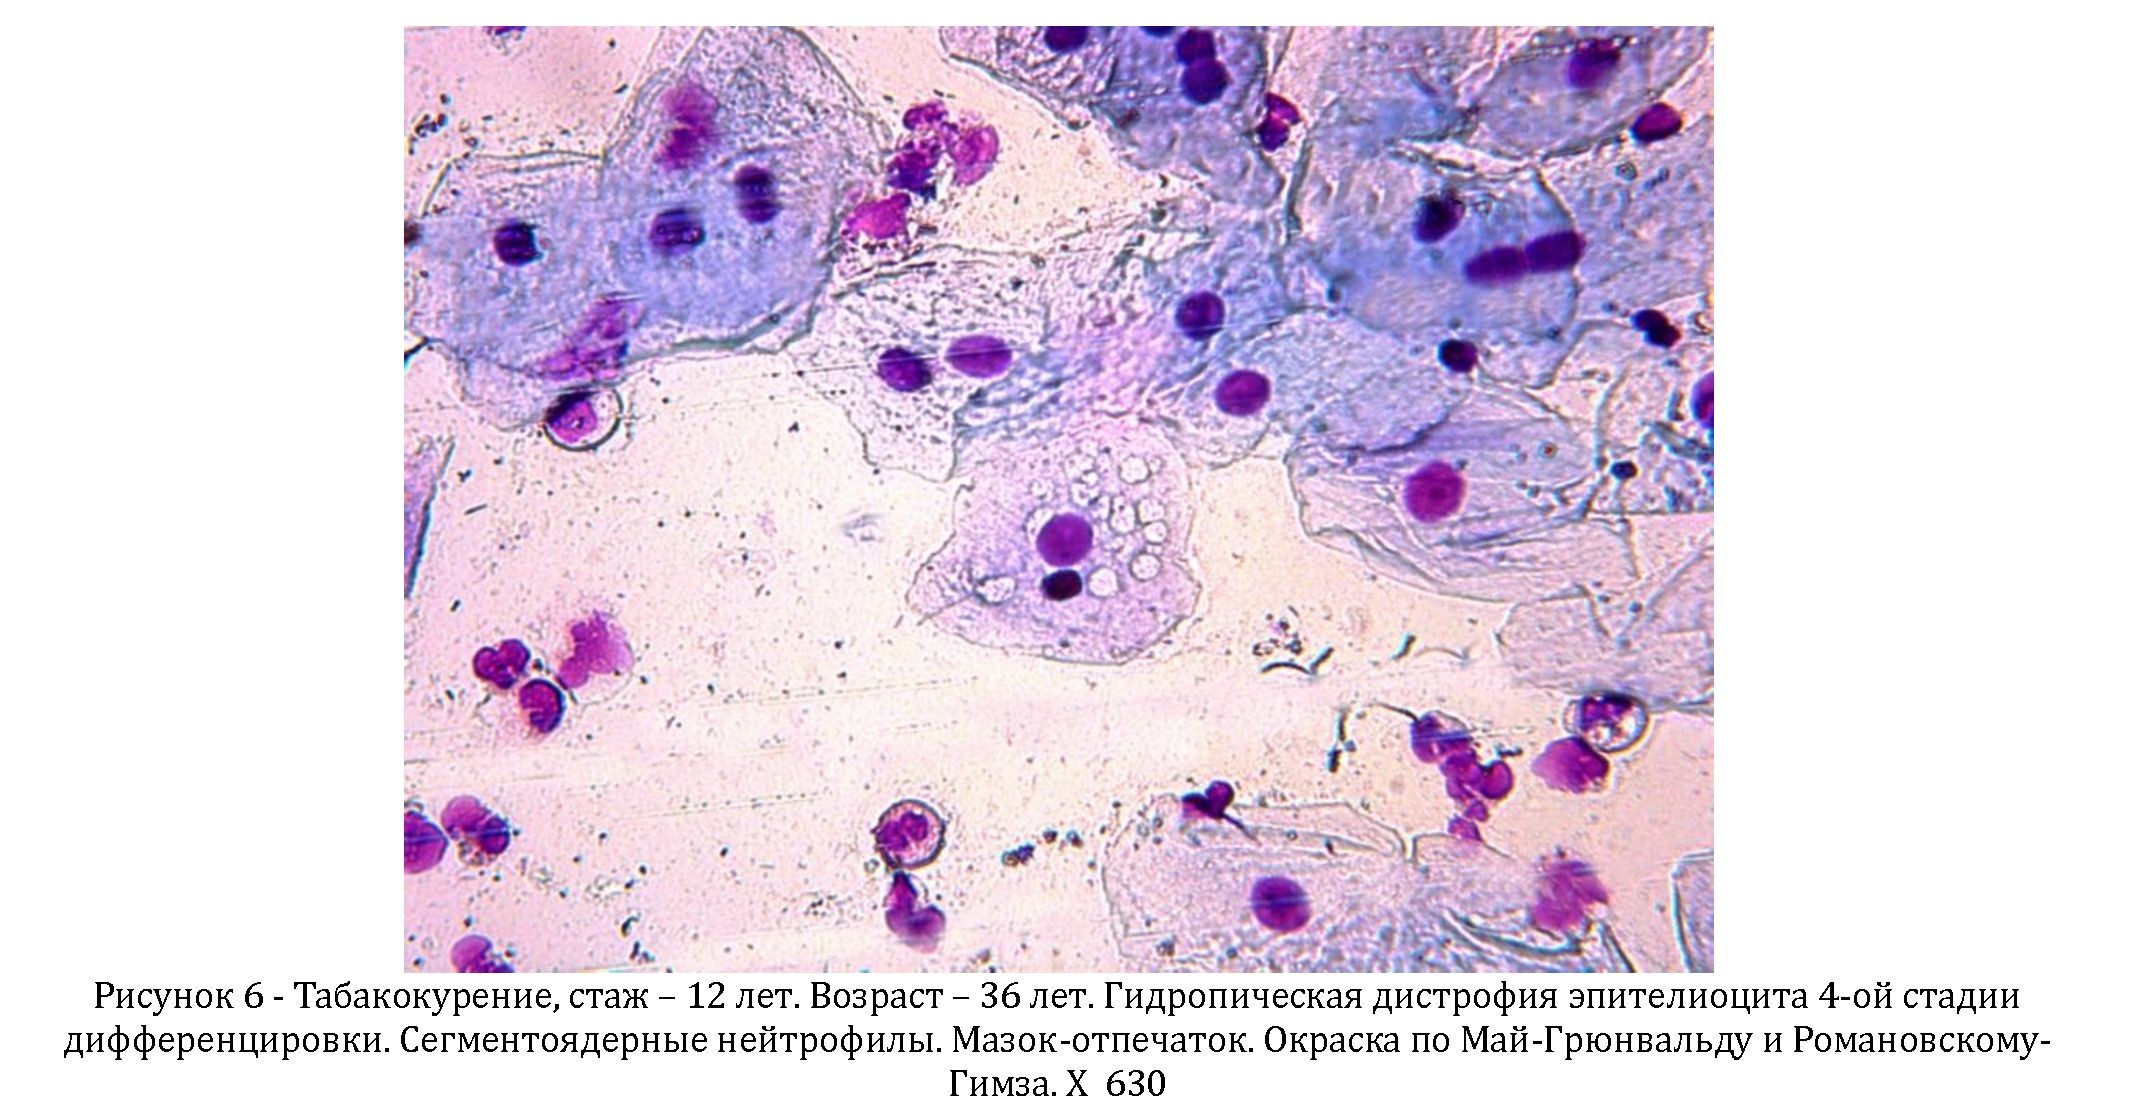 Клетки плоского эпителия полости рта человека под микроскопом